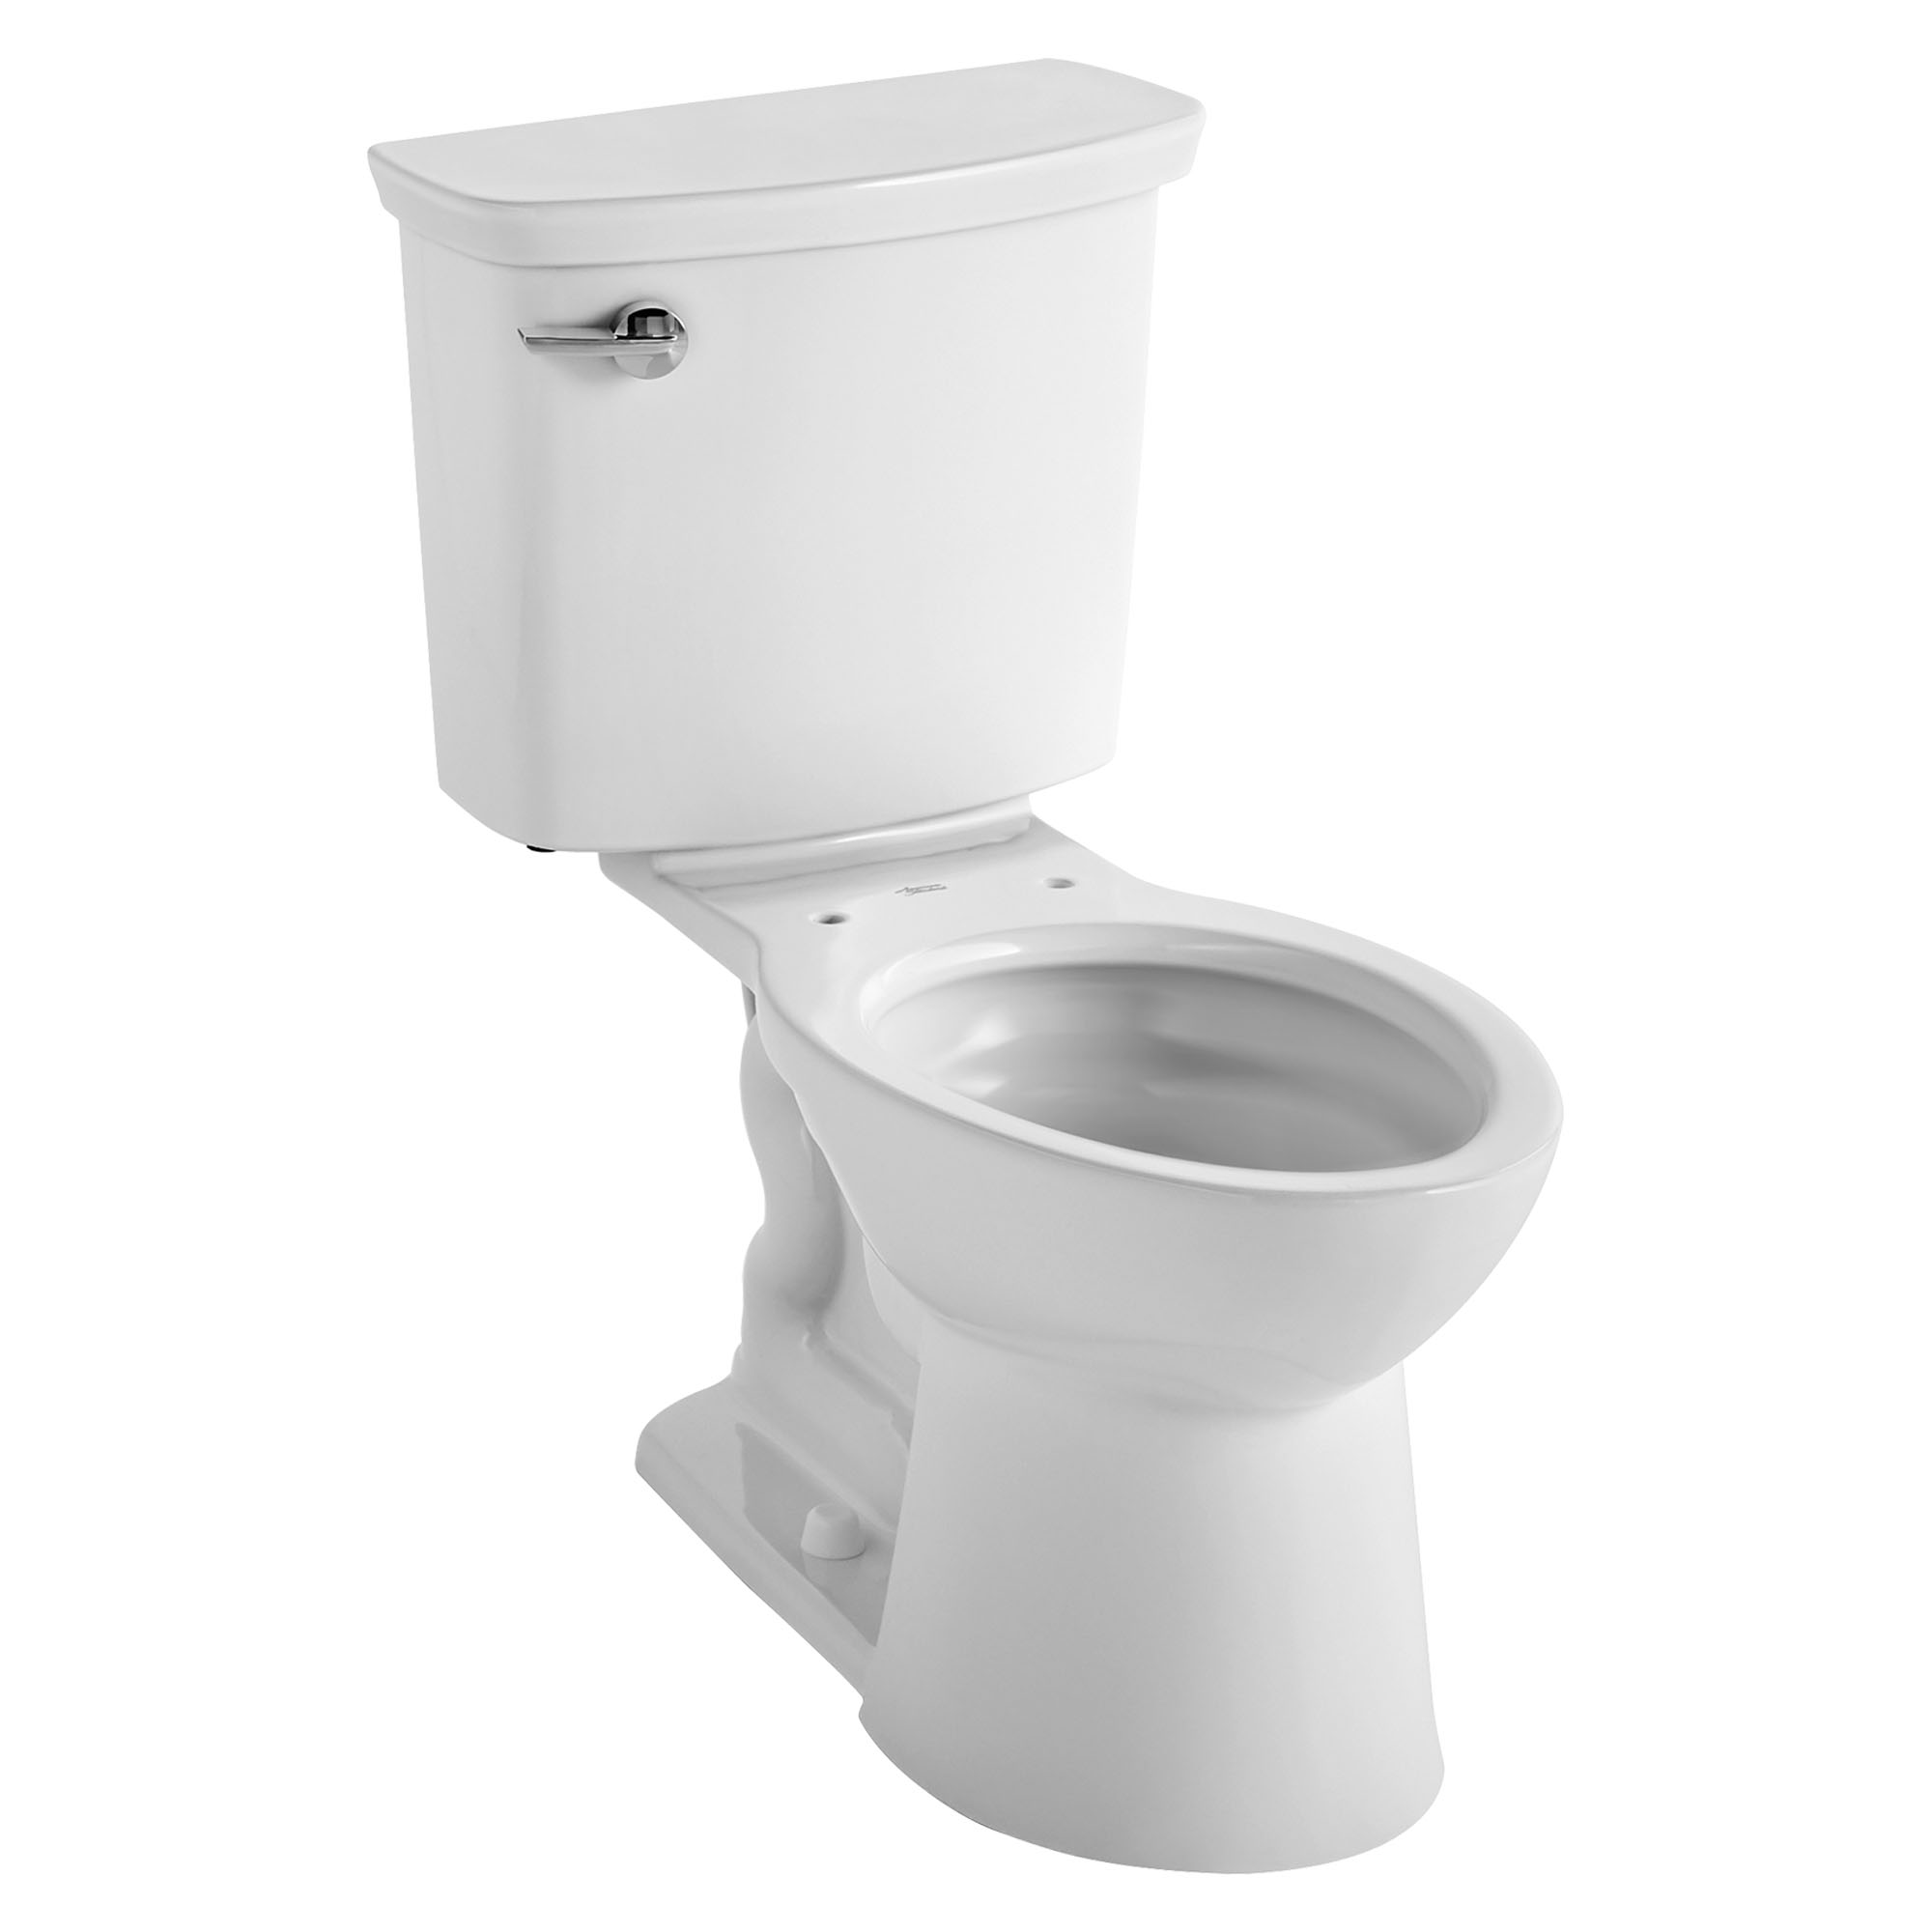 Toilette VorMax, 2 pièces, 1.0 gpc/3.8 lpc, à cuvette allongée à hauteur de chaise, sans siège